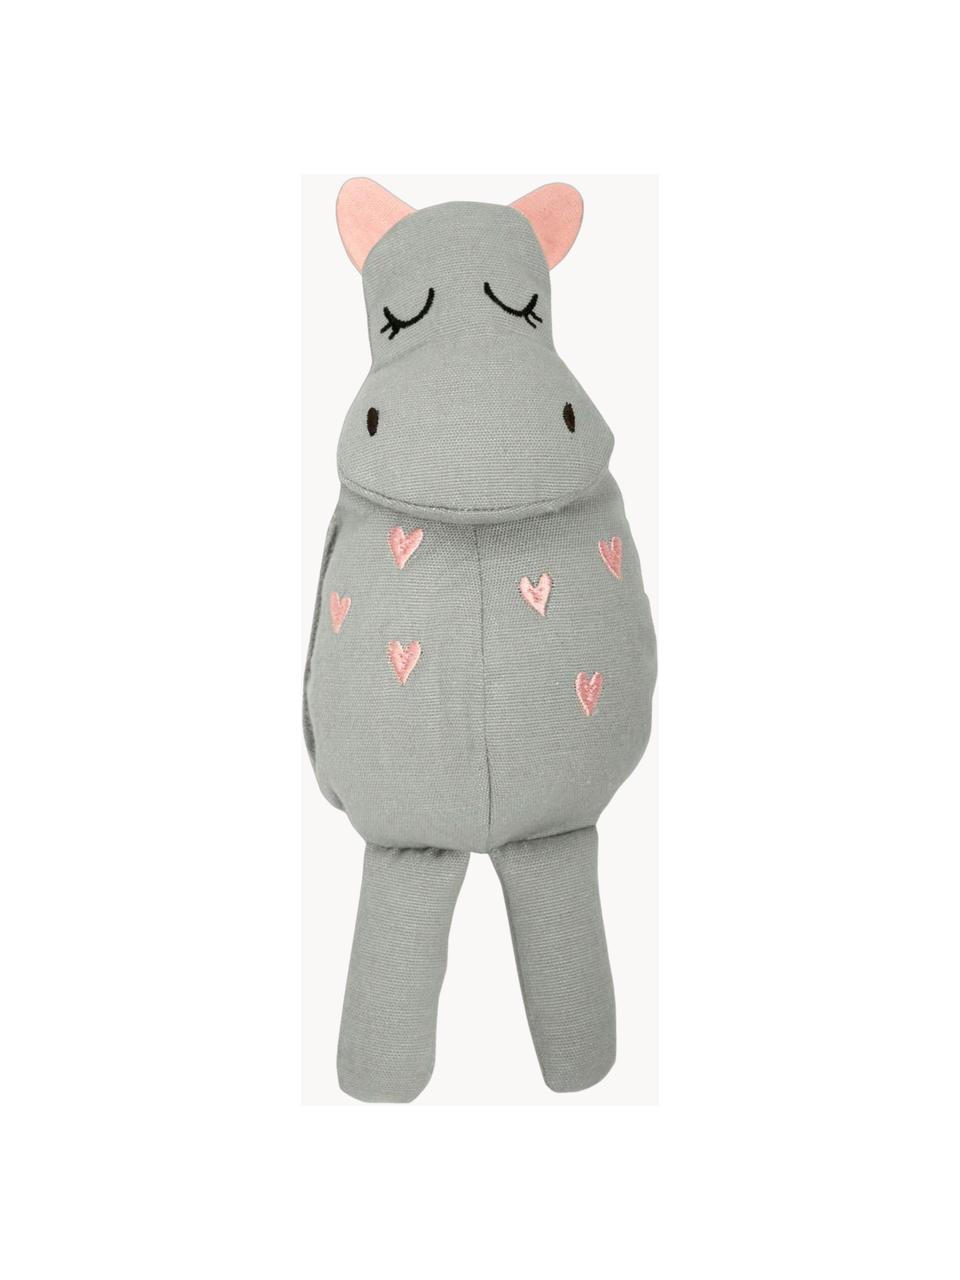 Kuscheltier Hippo aus Baumwolle, Bezug: 100 % Baumwolle, Grau, Rosa, B 8 x H 25 cm